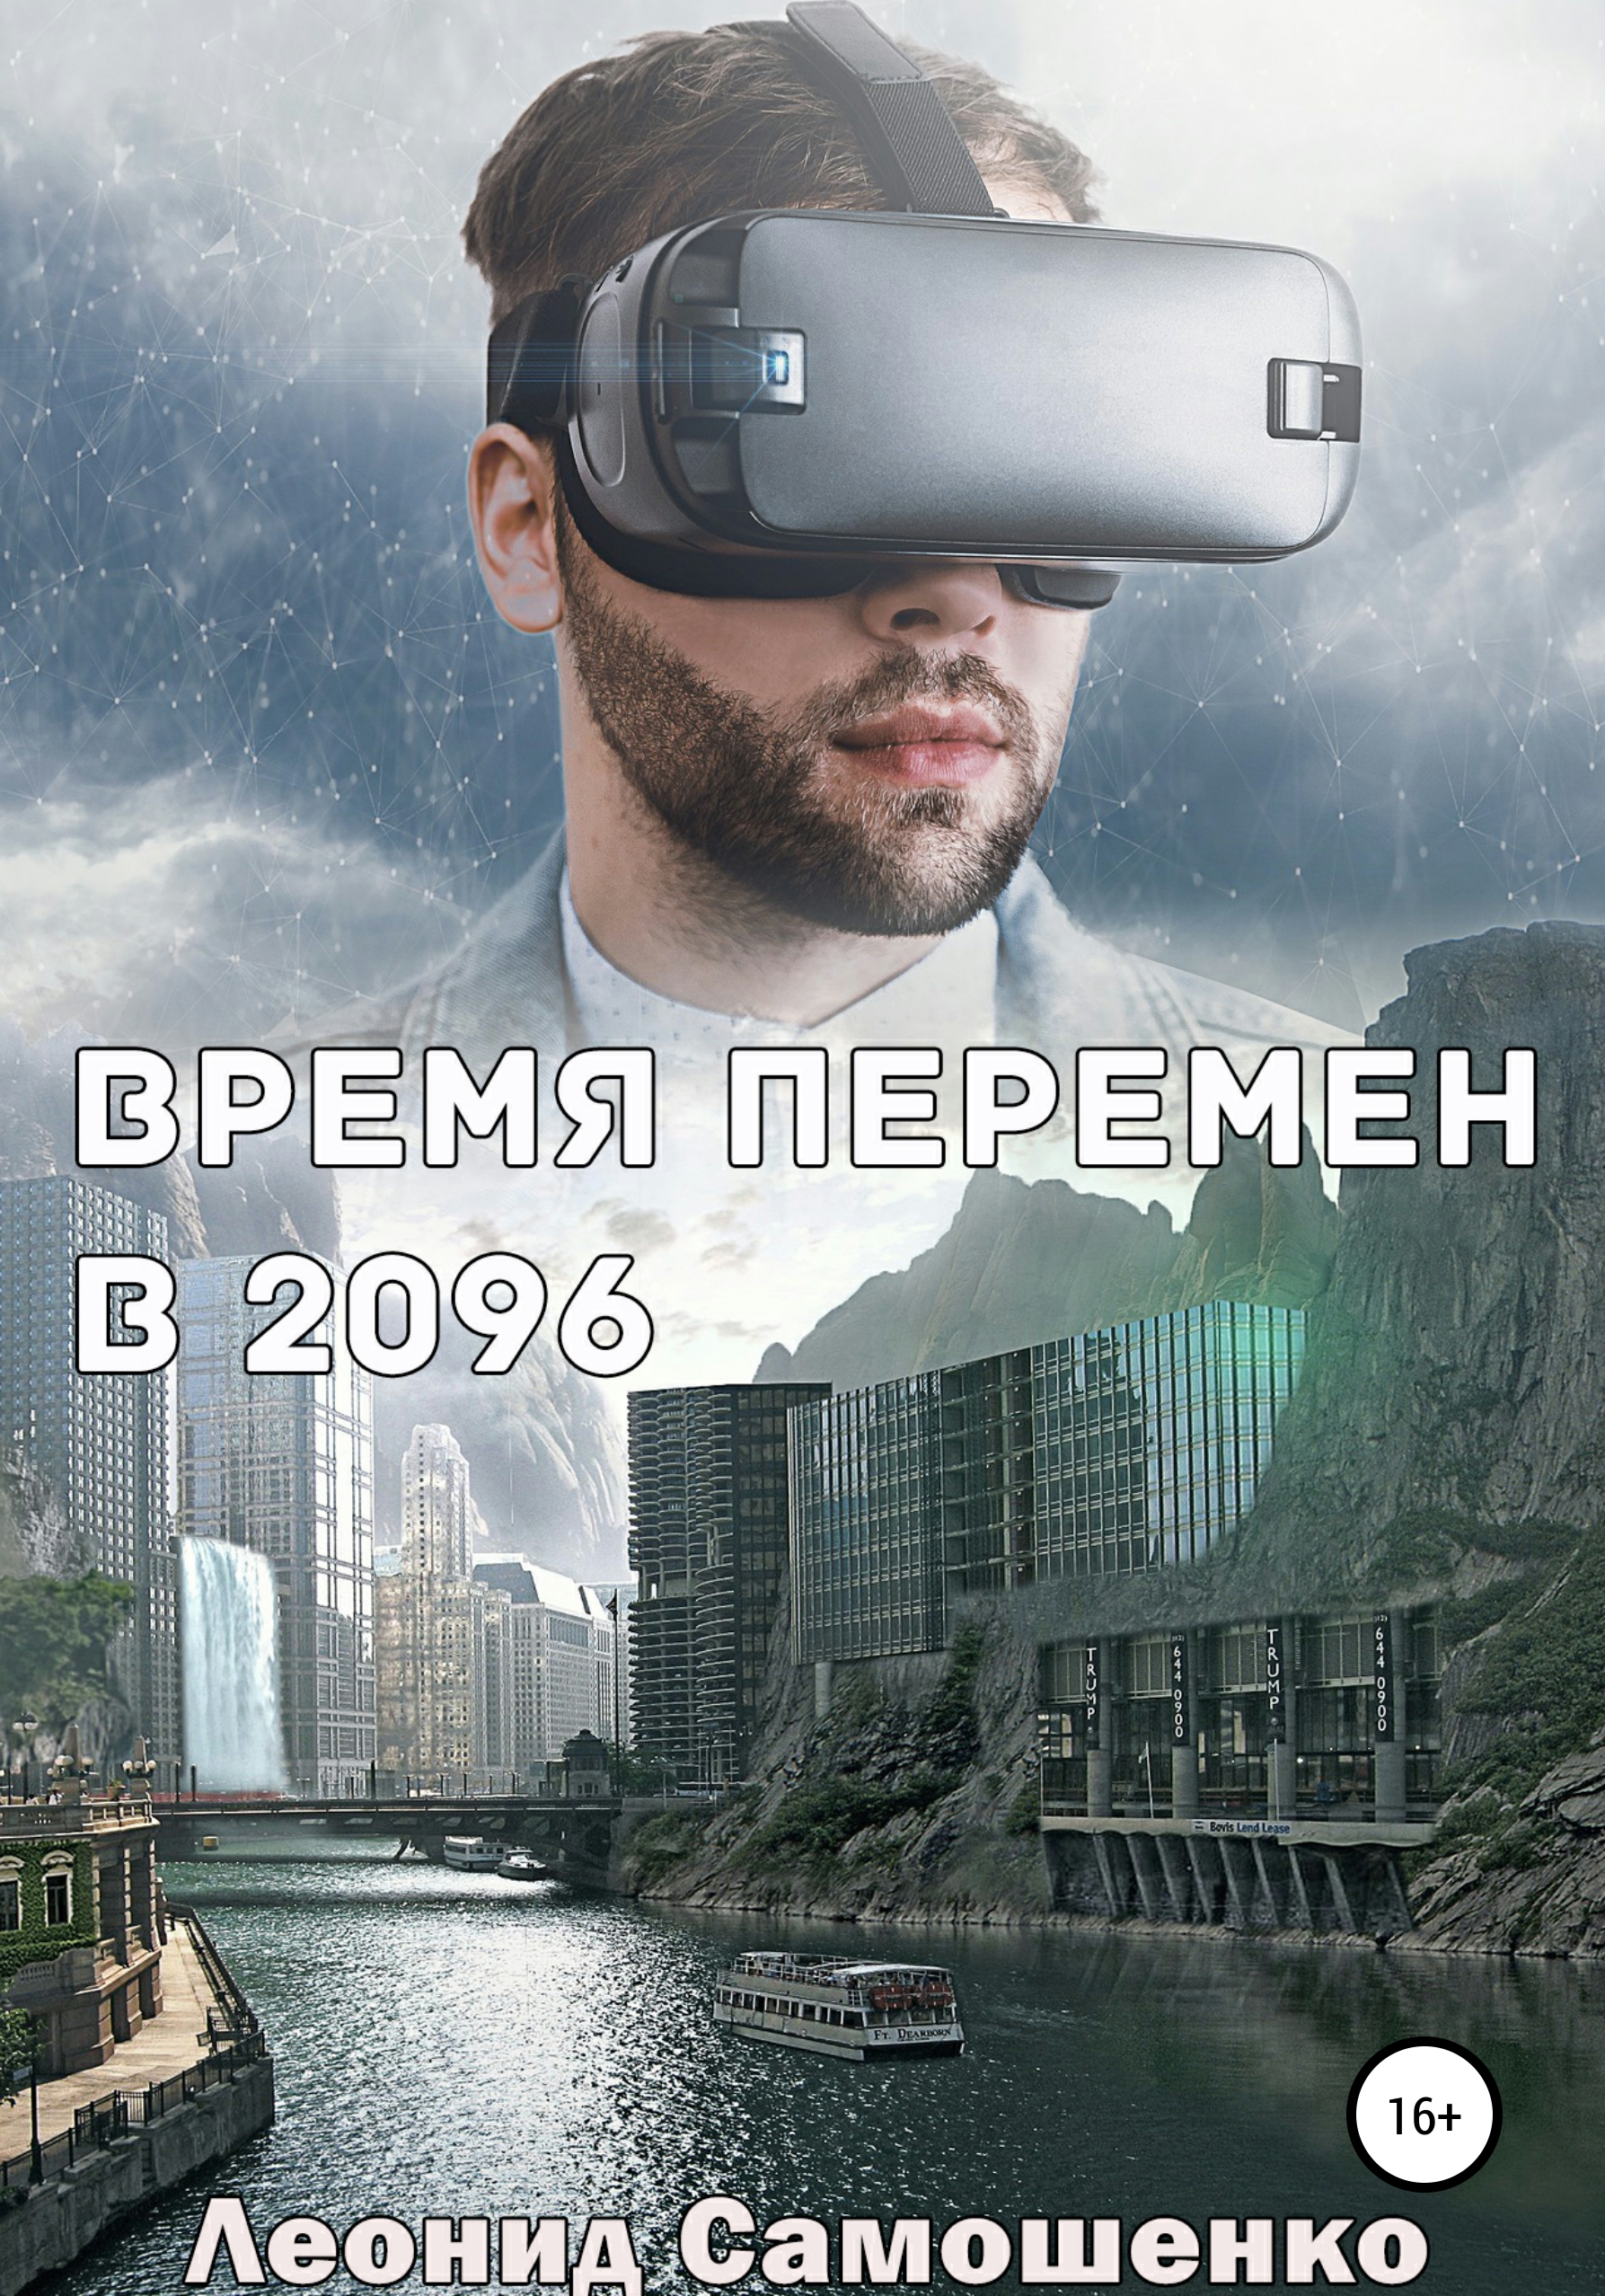 Выбрал виртуальный мир. Виртуальная реальность (Virtual reality, VR). Визуальная реальность. Ритуальная реальность. Реальный и виртуальный мир.